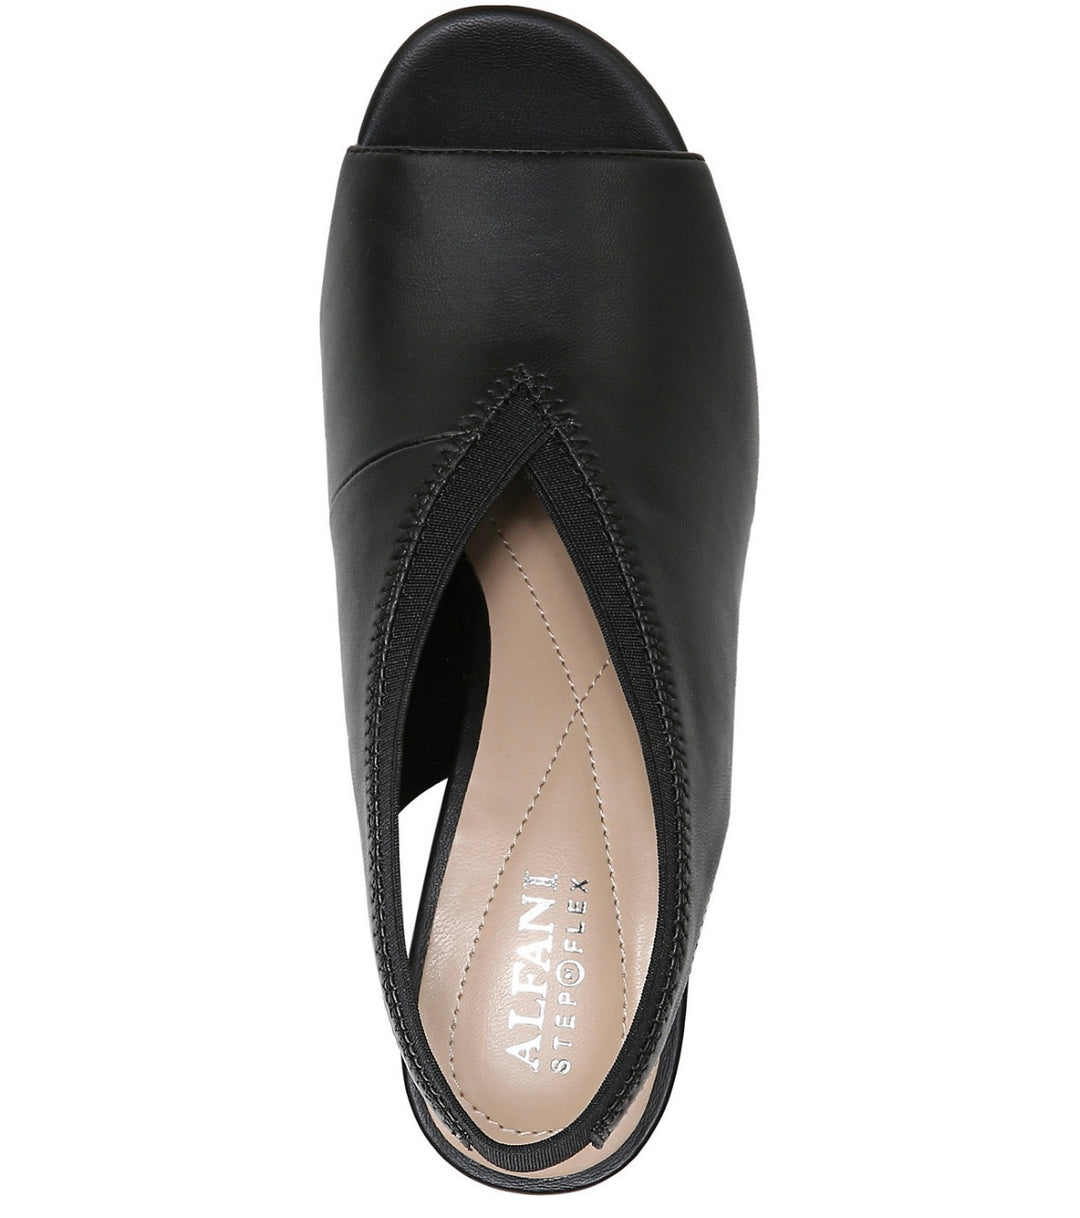 Alfani Women's Ceal Faux Leather Dessy Slingback Sandals Black Size 5.5M